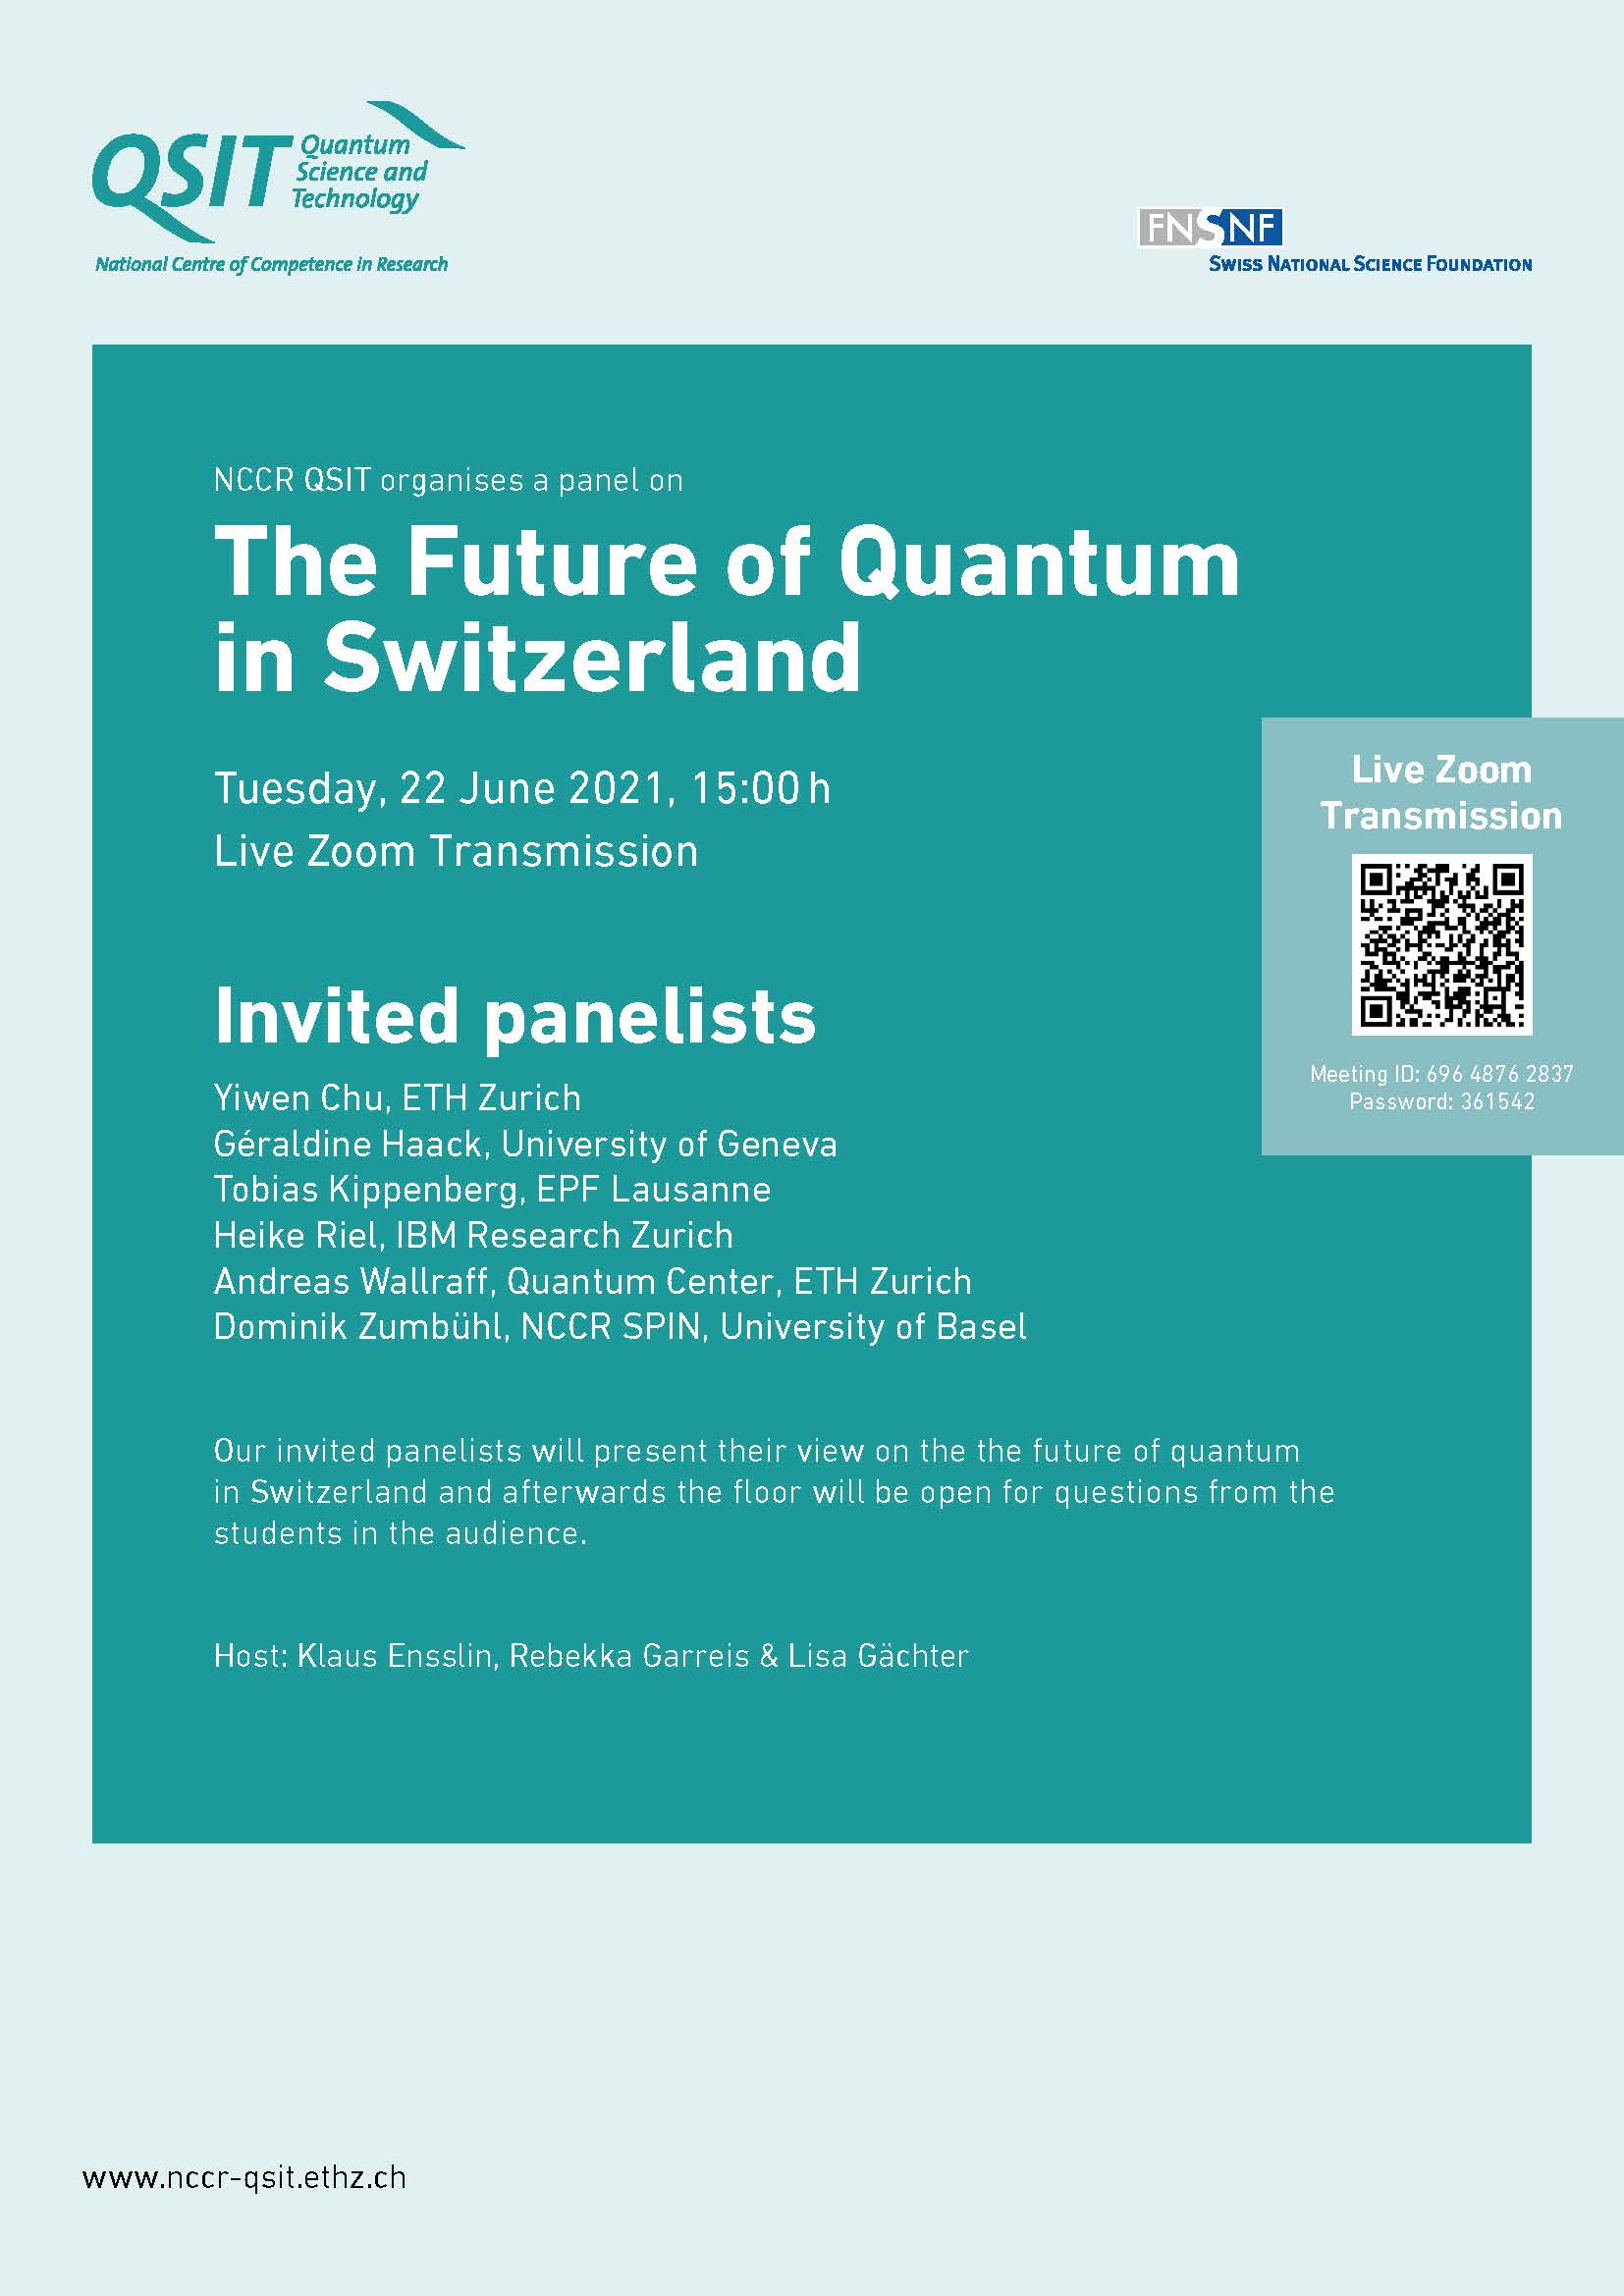 The Future of Quantum in Switzerland